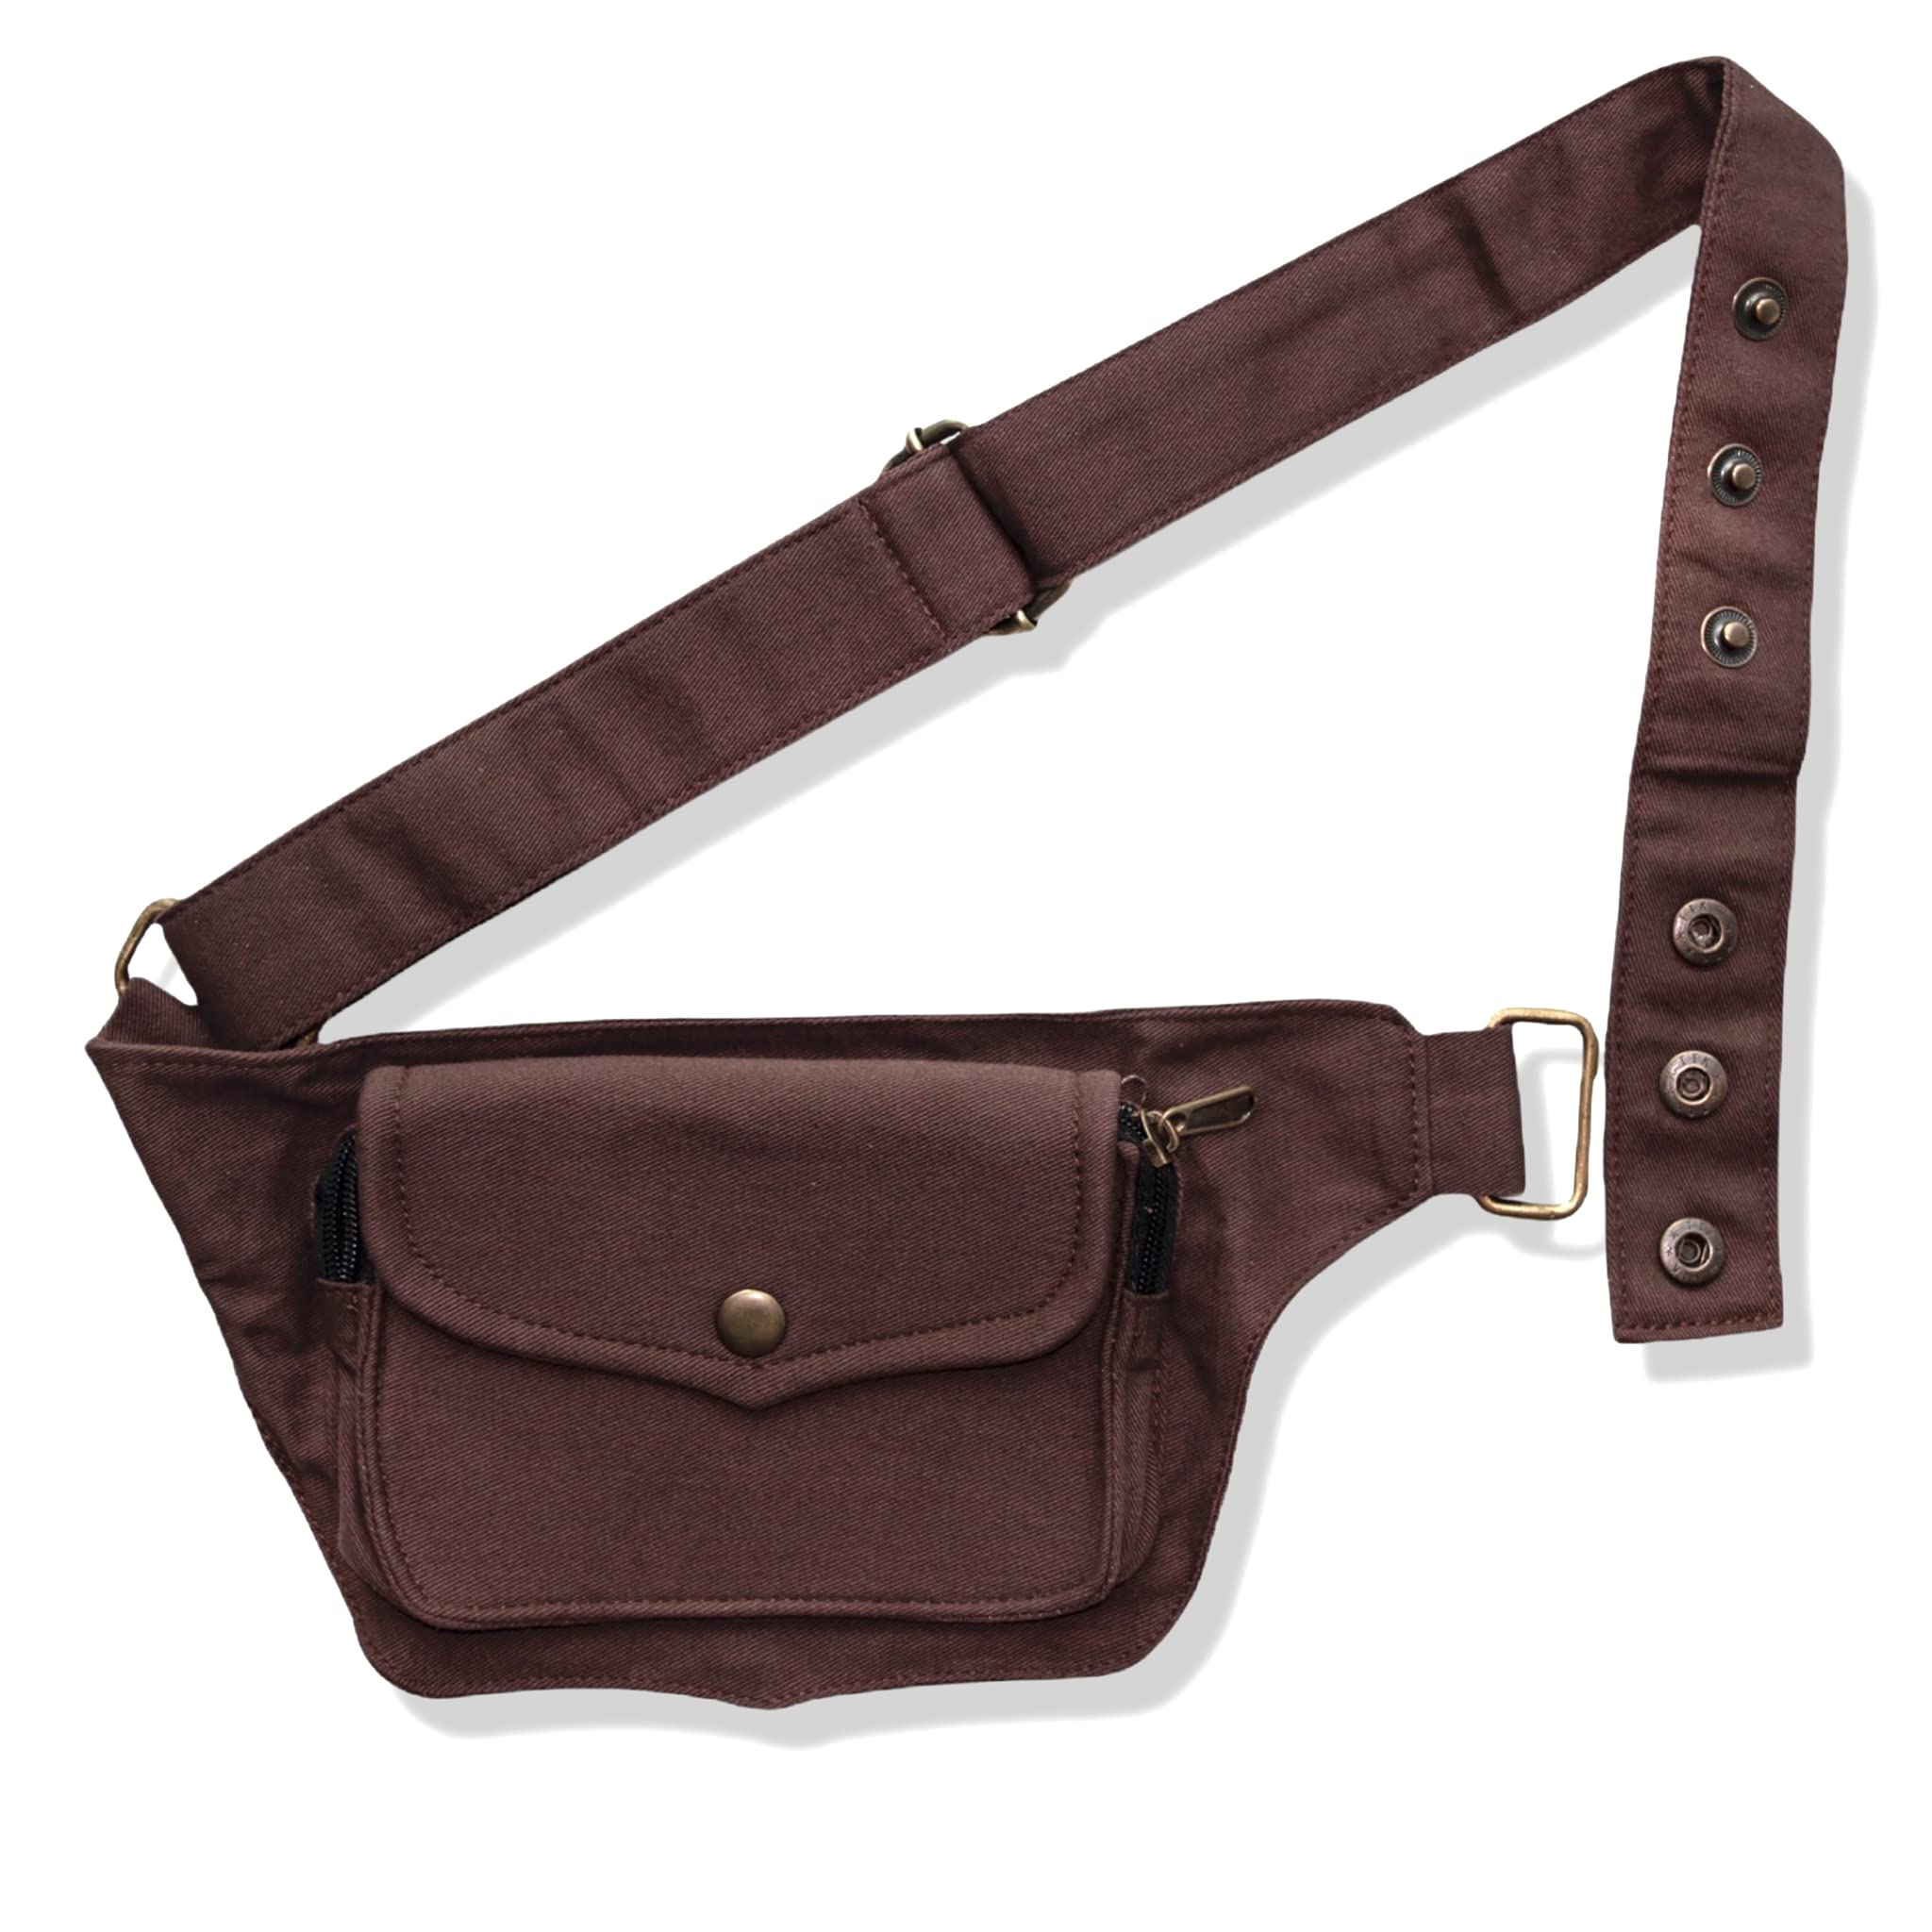 Canvas Pocket Belt | 2 pocket Utility Belt Fashion | travel belt, festival belt, cotton hip bag, belt bag, party purse, fanny pack, Brown, One Size